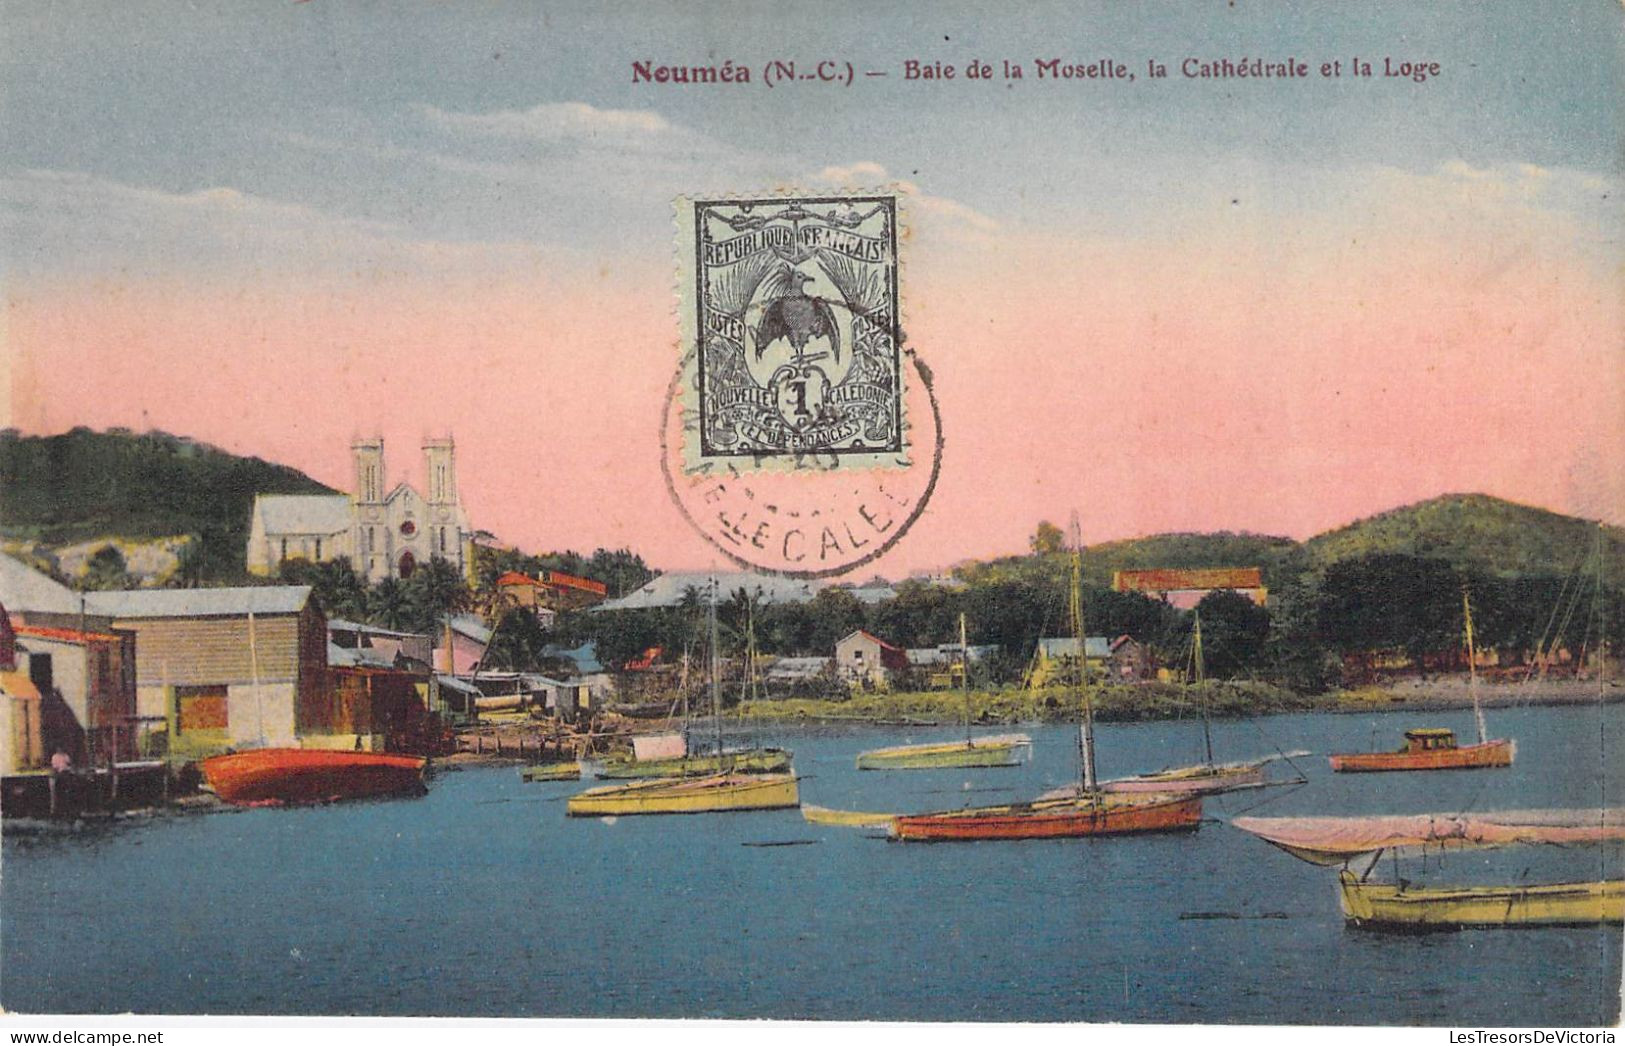 Nouvelle Calédonie - Nouméa - Baie De La Moselle Le Cathédrale Et La Loge - Bateau - Colorisé - Carte Postale Ancienne - Nieuw-Caledonië